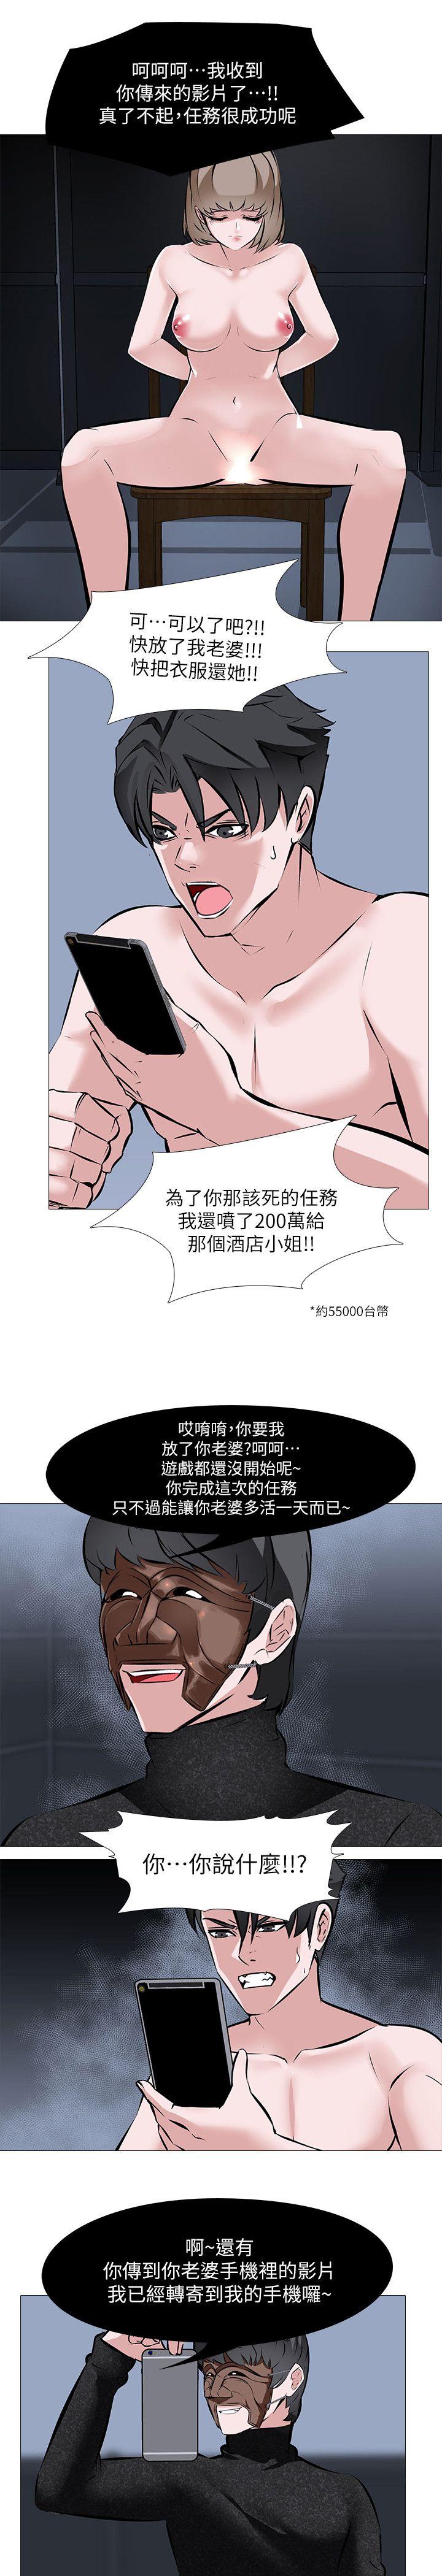 韩国污漫画 虐妻遊戲 第3话-不放过你! 21